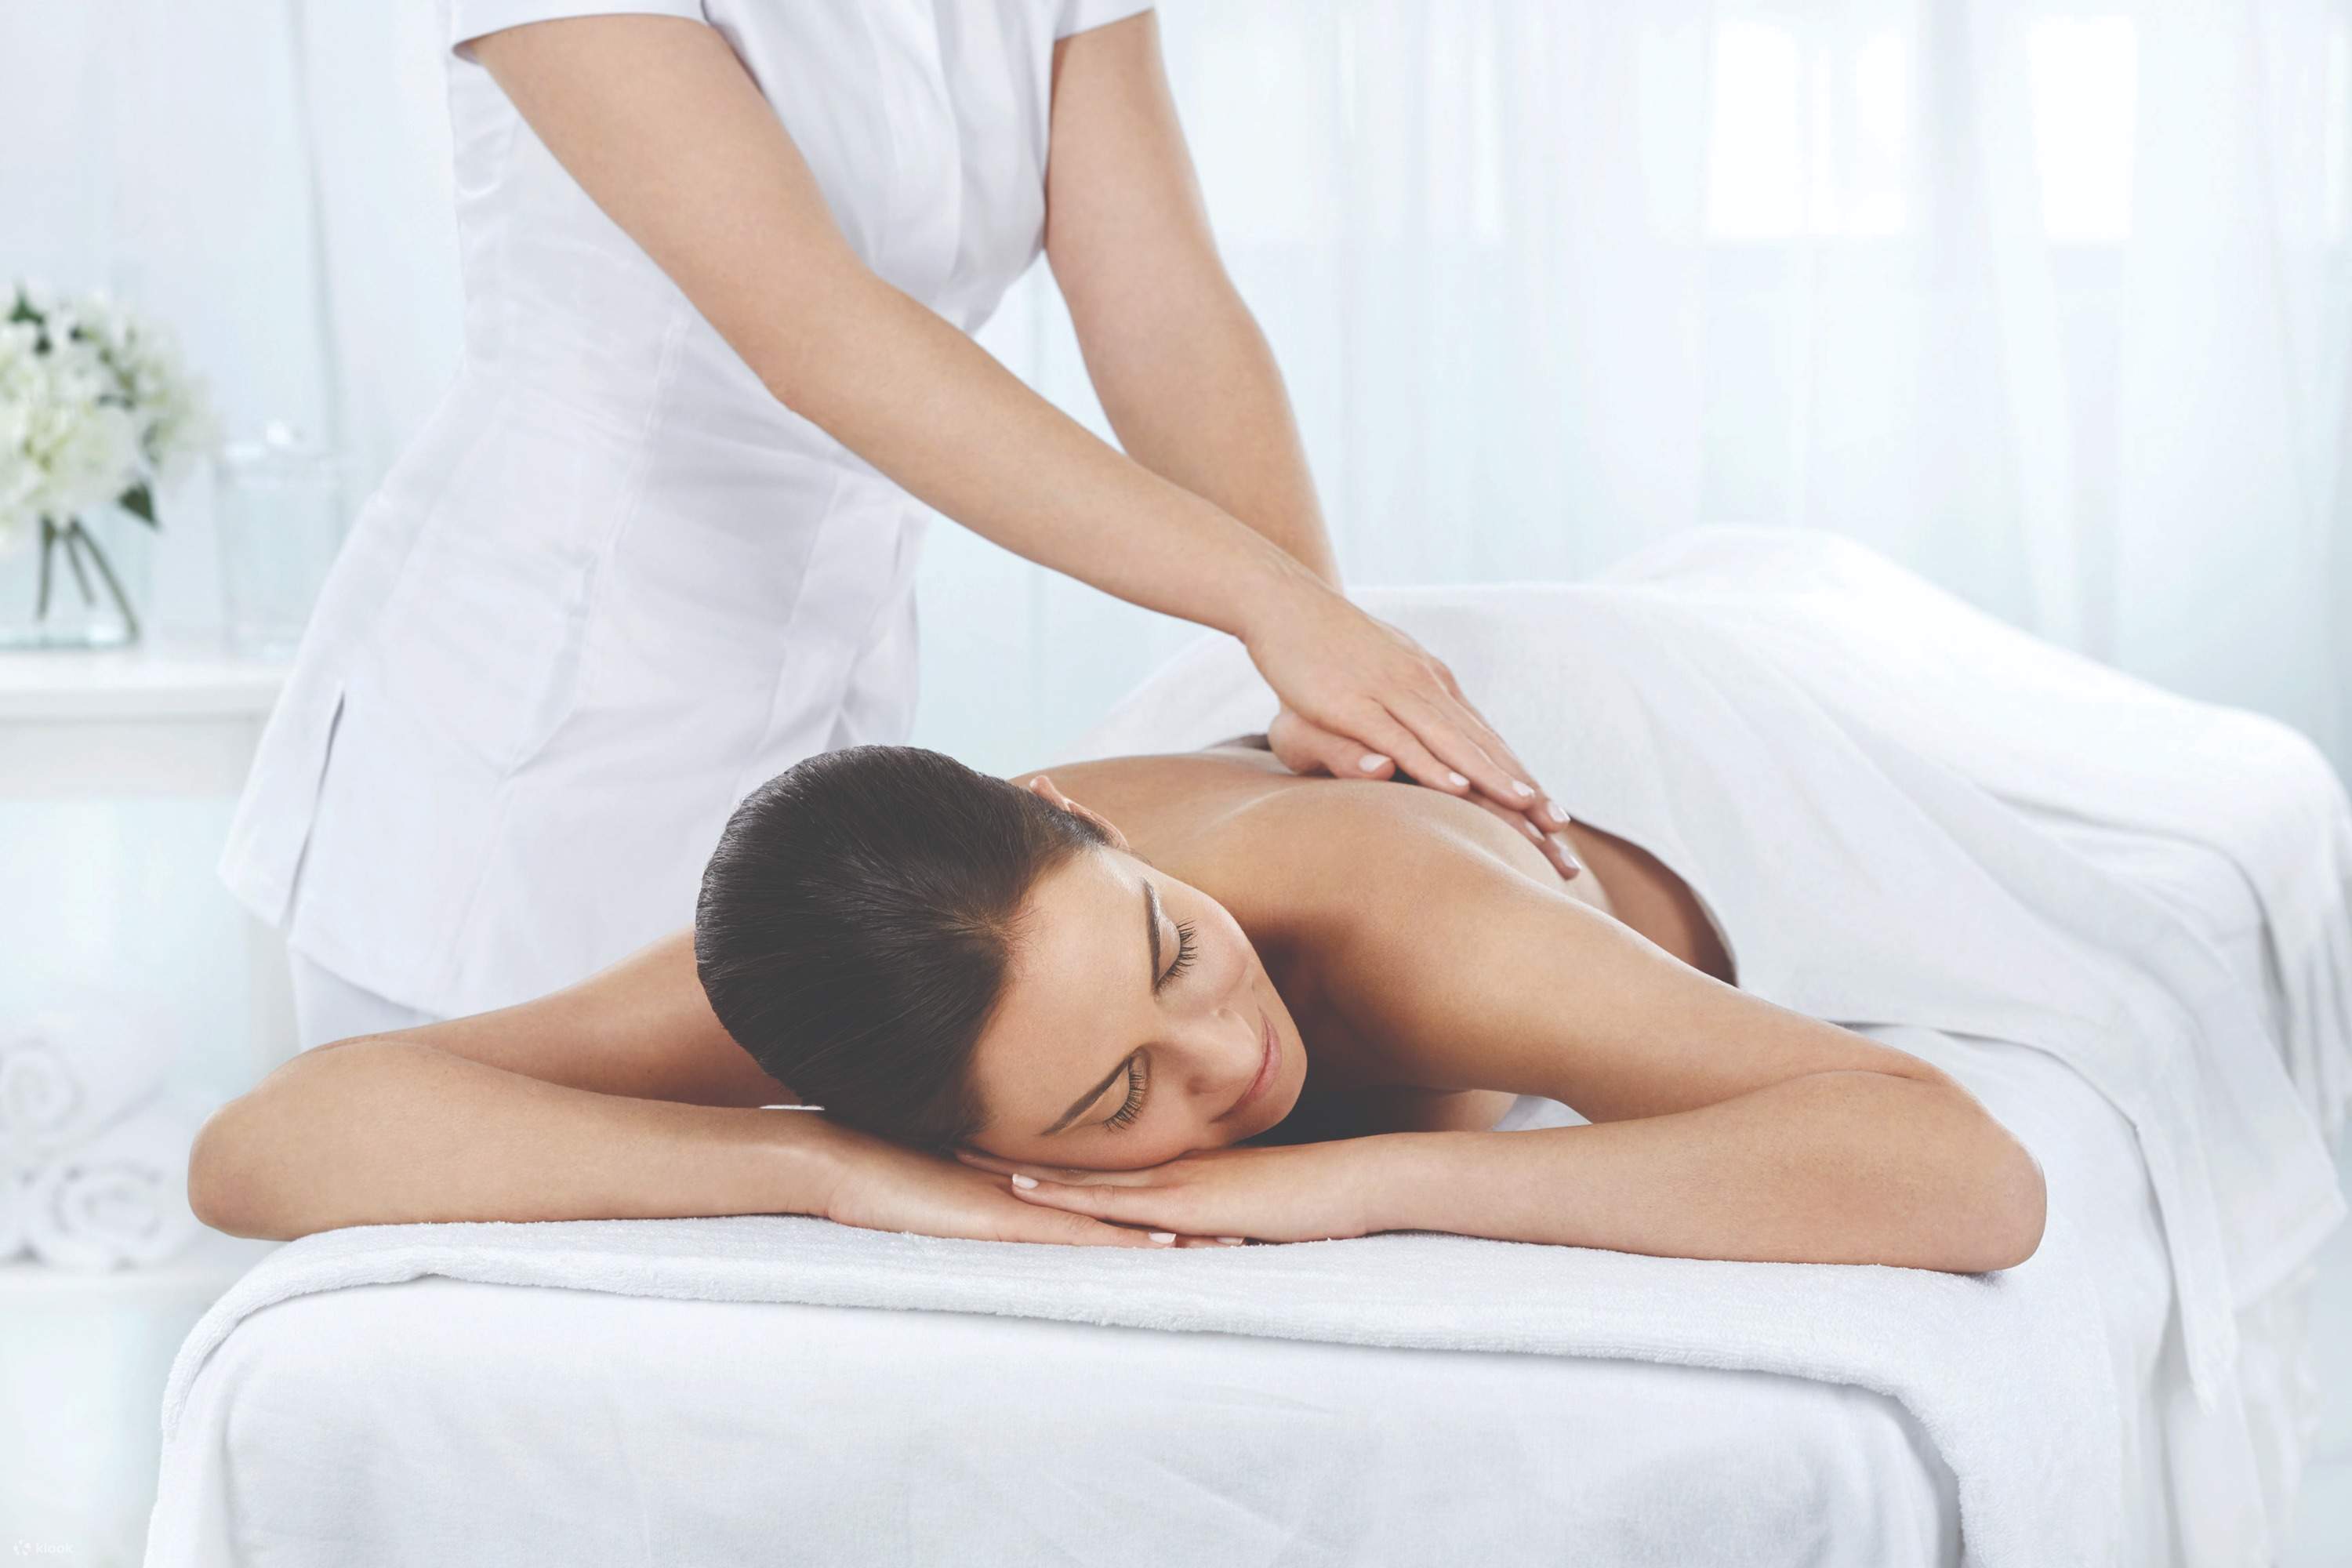 Intimate massage. Массаж. Ручной массаж. Оздоровительный массаж спины. Классический массаж тела.